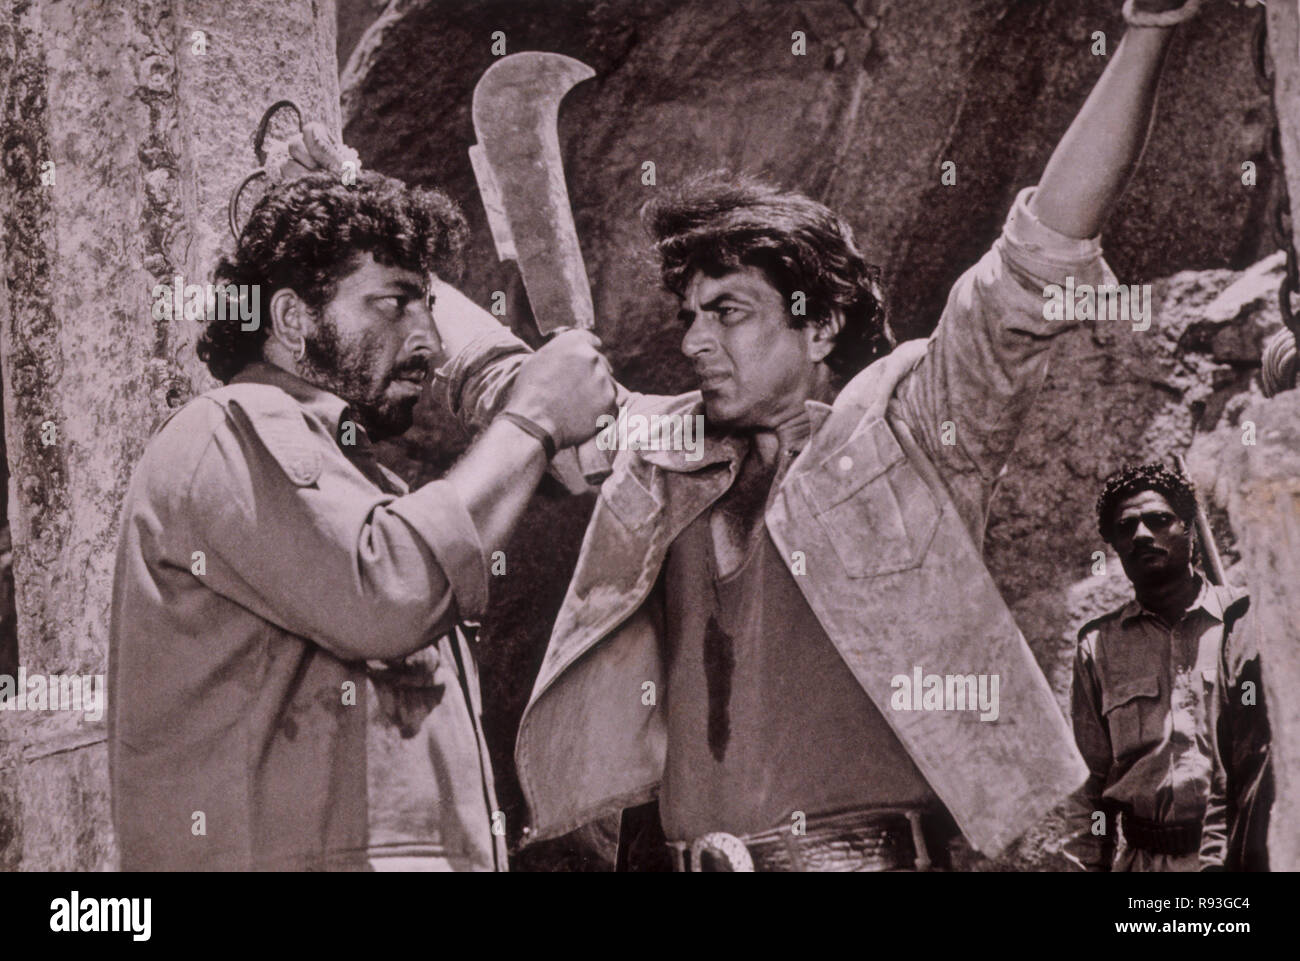 Amjad Khan und Dharmendra Indian bollywood Filmschauspieler in Hindi Film Sholay, Indien, Asien, Indisch, Asiatisch, Altes Vintage 1900s Bild Stockfoto